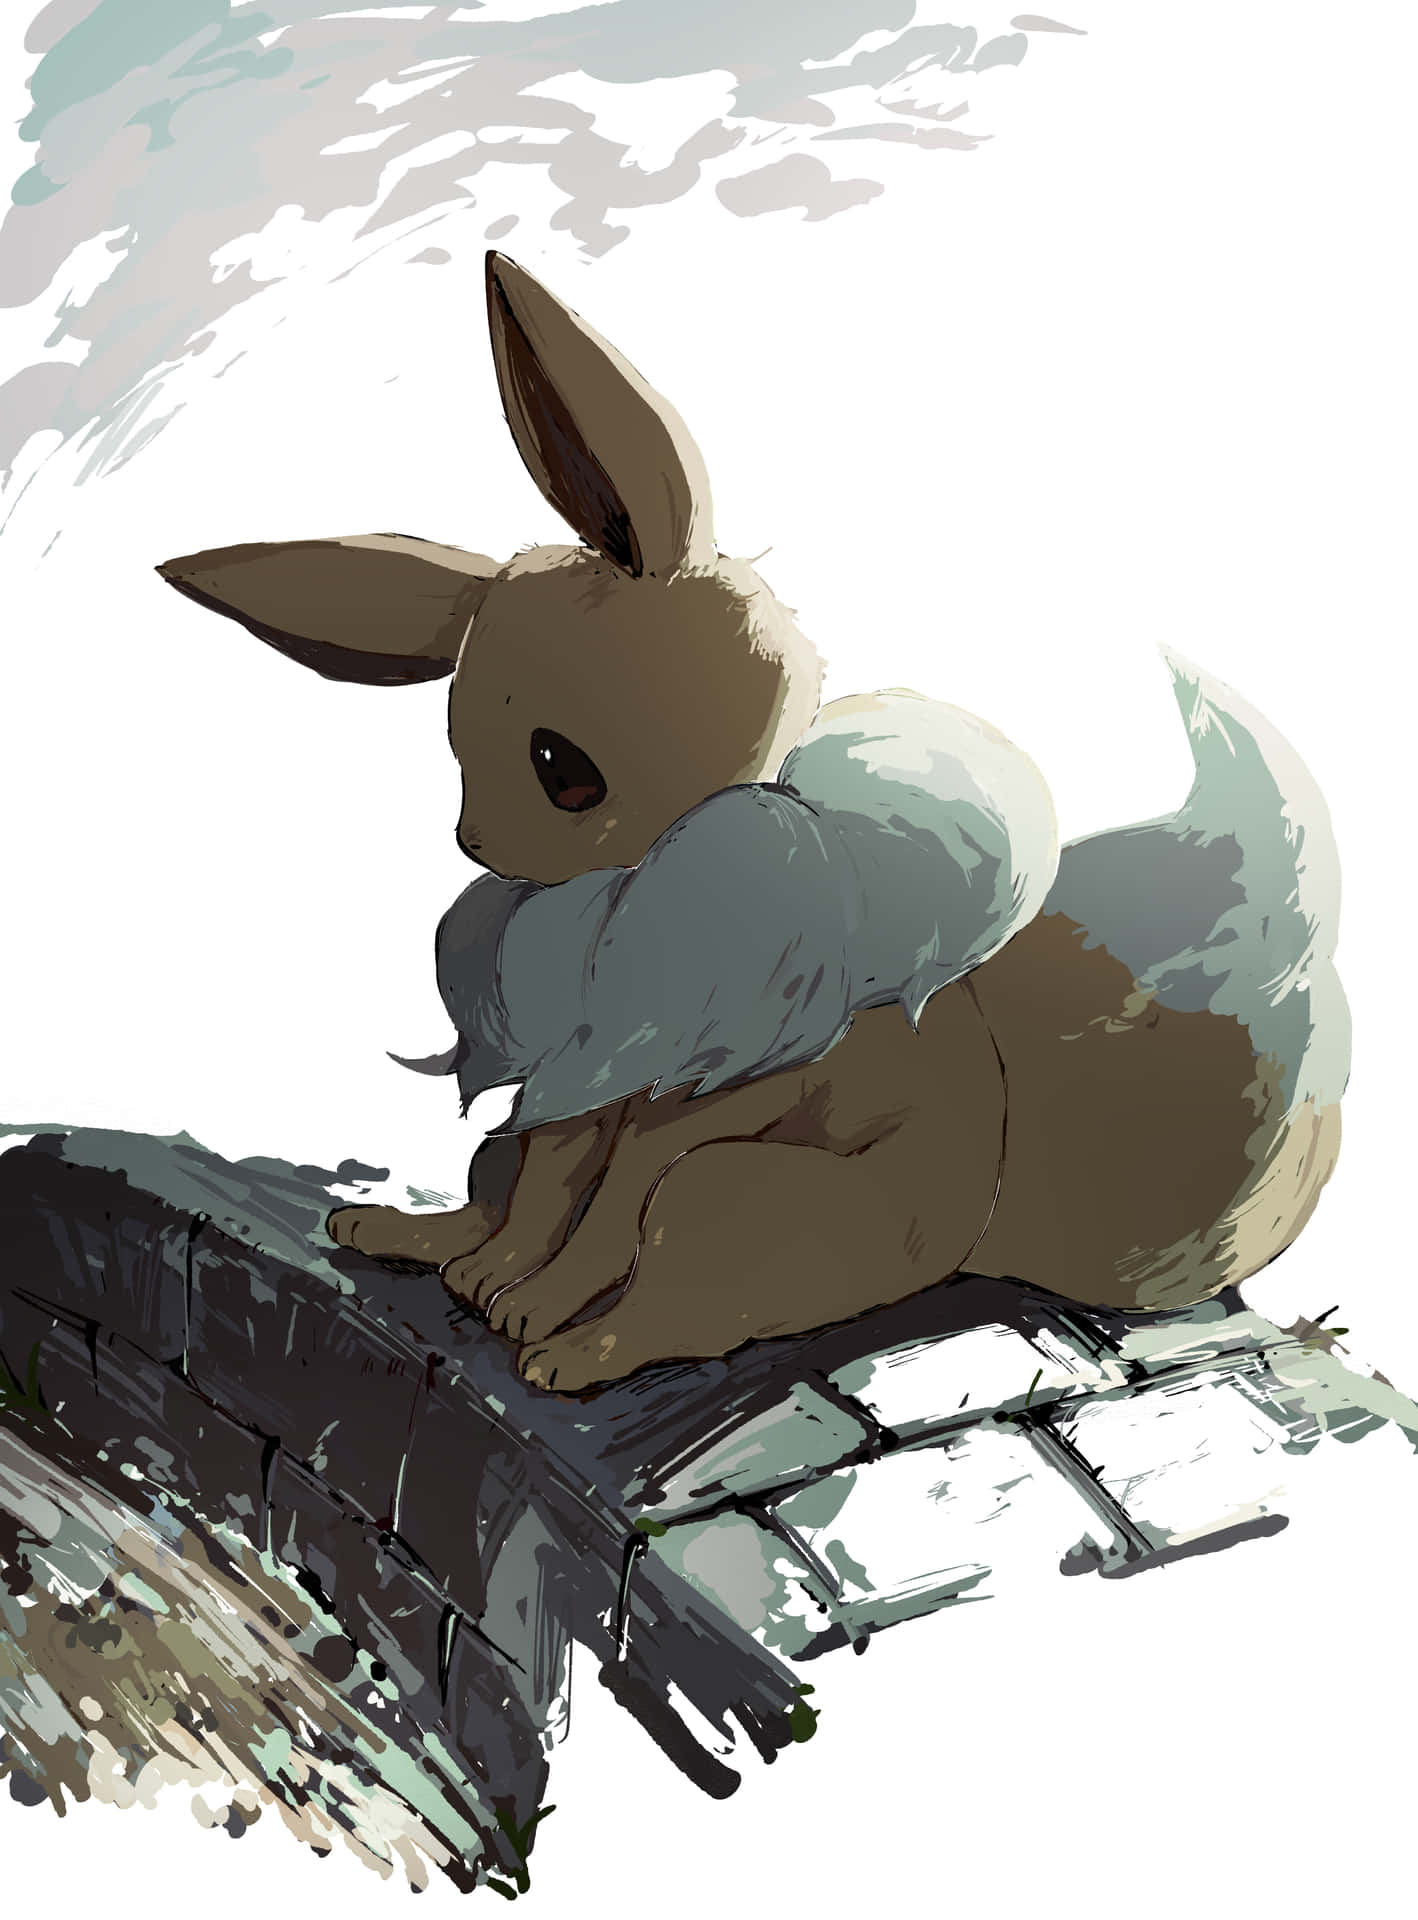 Eevee Pokemon Artistic Rendering Wallpaper